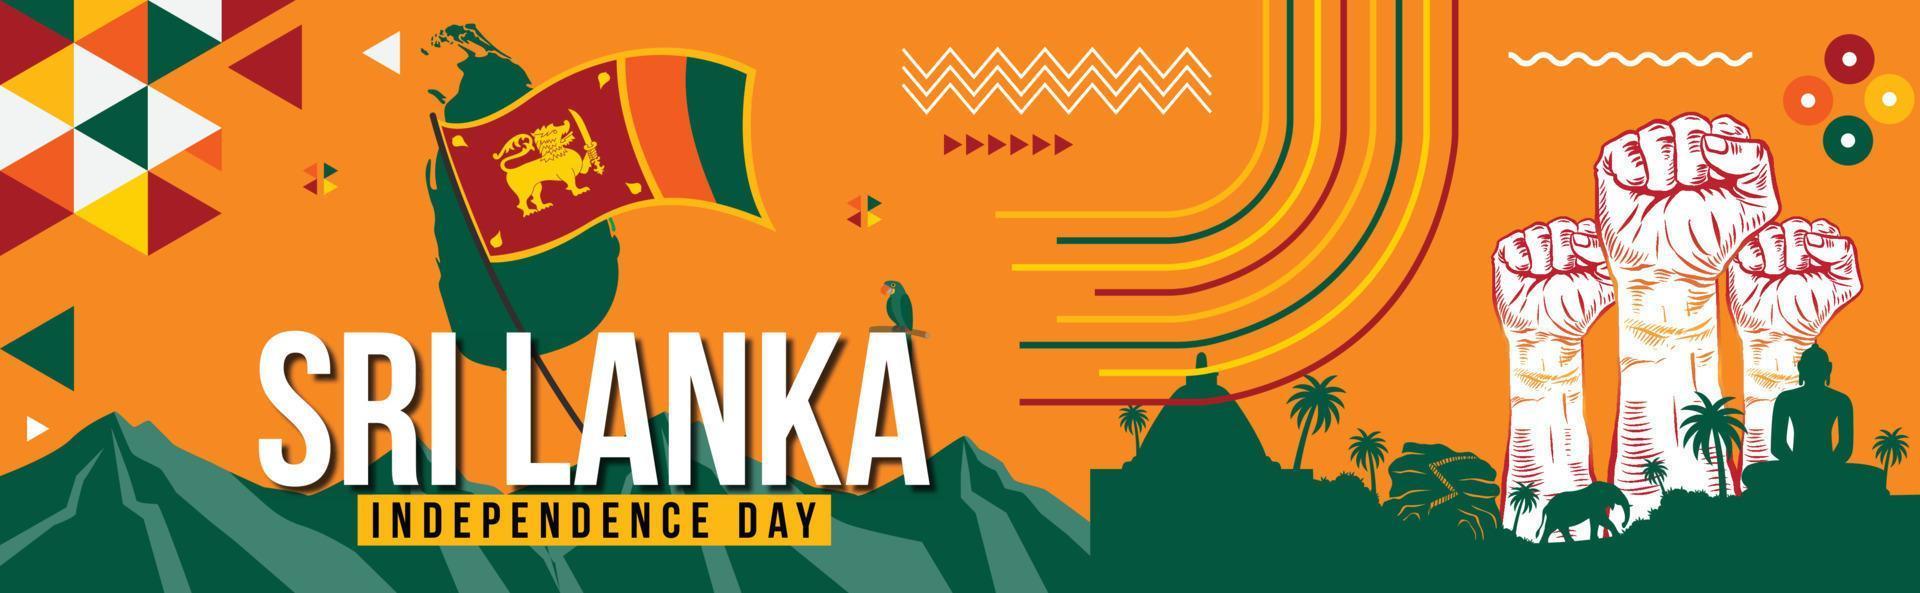 sri lanka nationale journée bannière pour indépendance journée avec texte, Sri lankais drapeau thème coloré Icônes et la nature paysage. abstrait géométrique bannière pour le nationale journée de sri lanka vecteur conception